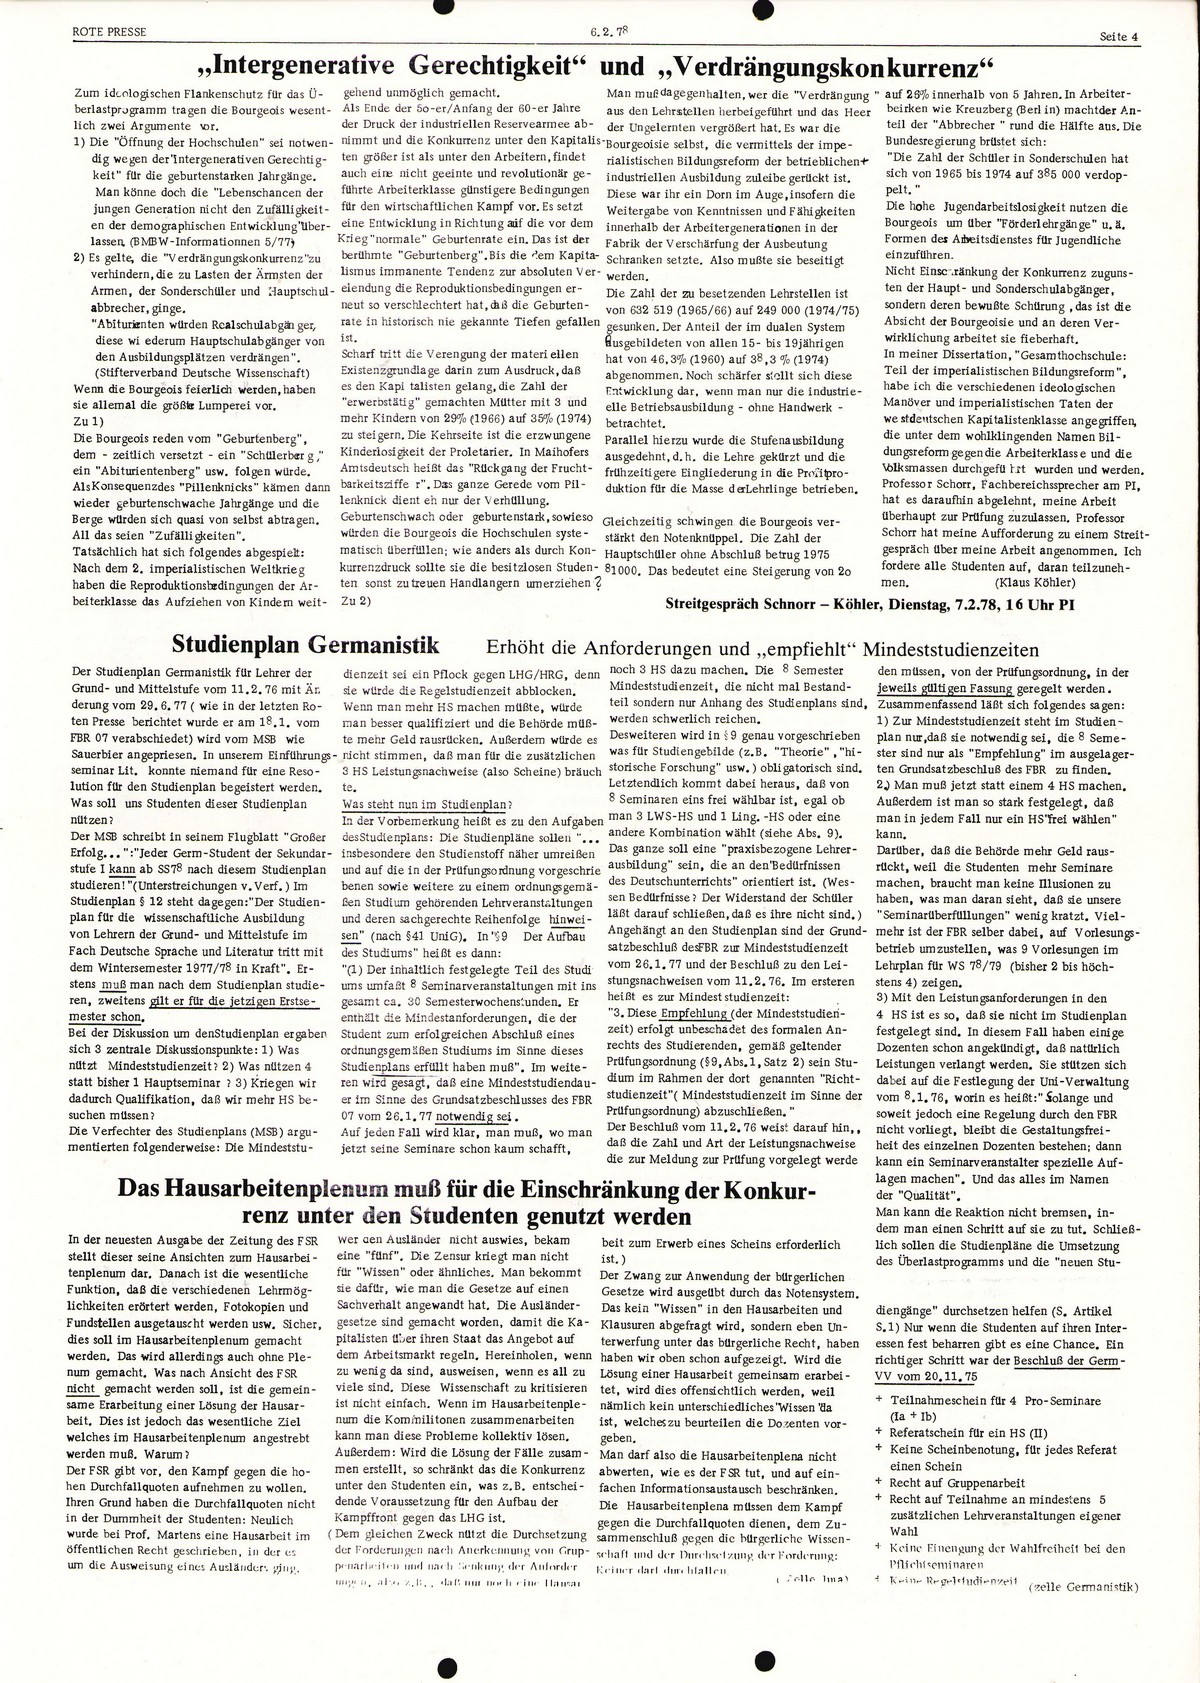 Hamburg_Rote_Presse_19780206_004